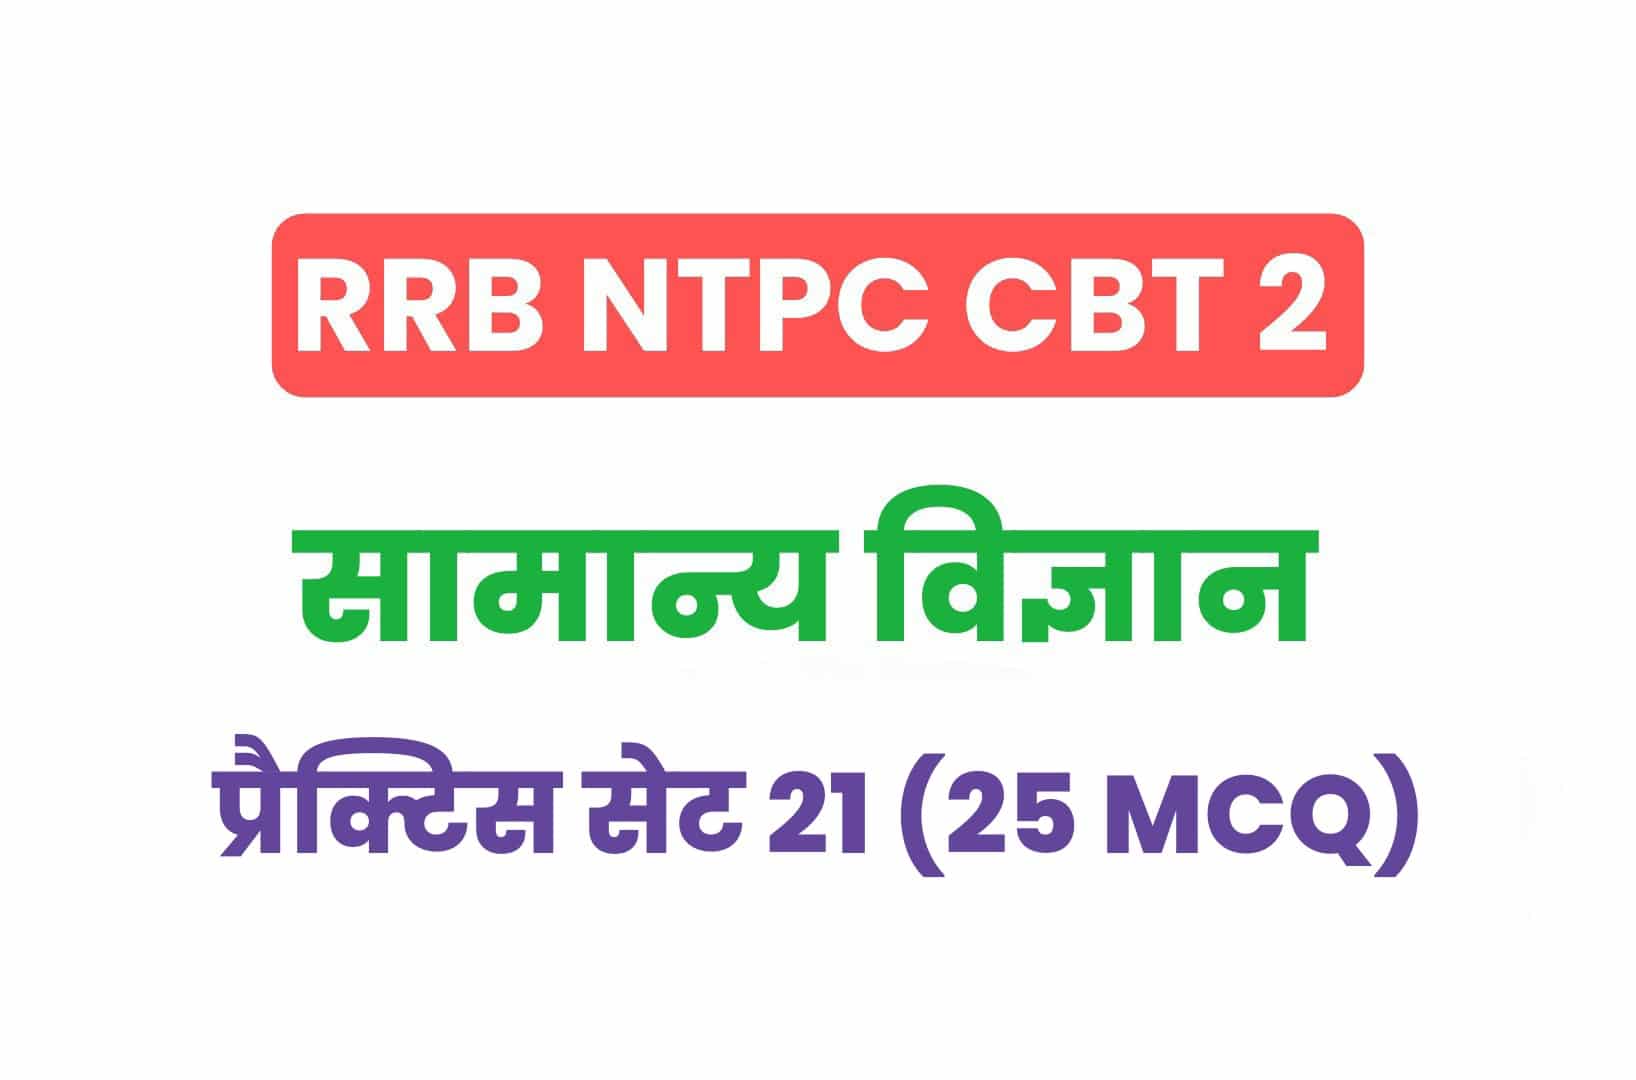 RRB NTPC CBT 2 Science प्रैक्टिस सेट 21: सामान्य विज्ञान के इन महत्वपूर्ण प्रश्नों का करें अध्ययन